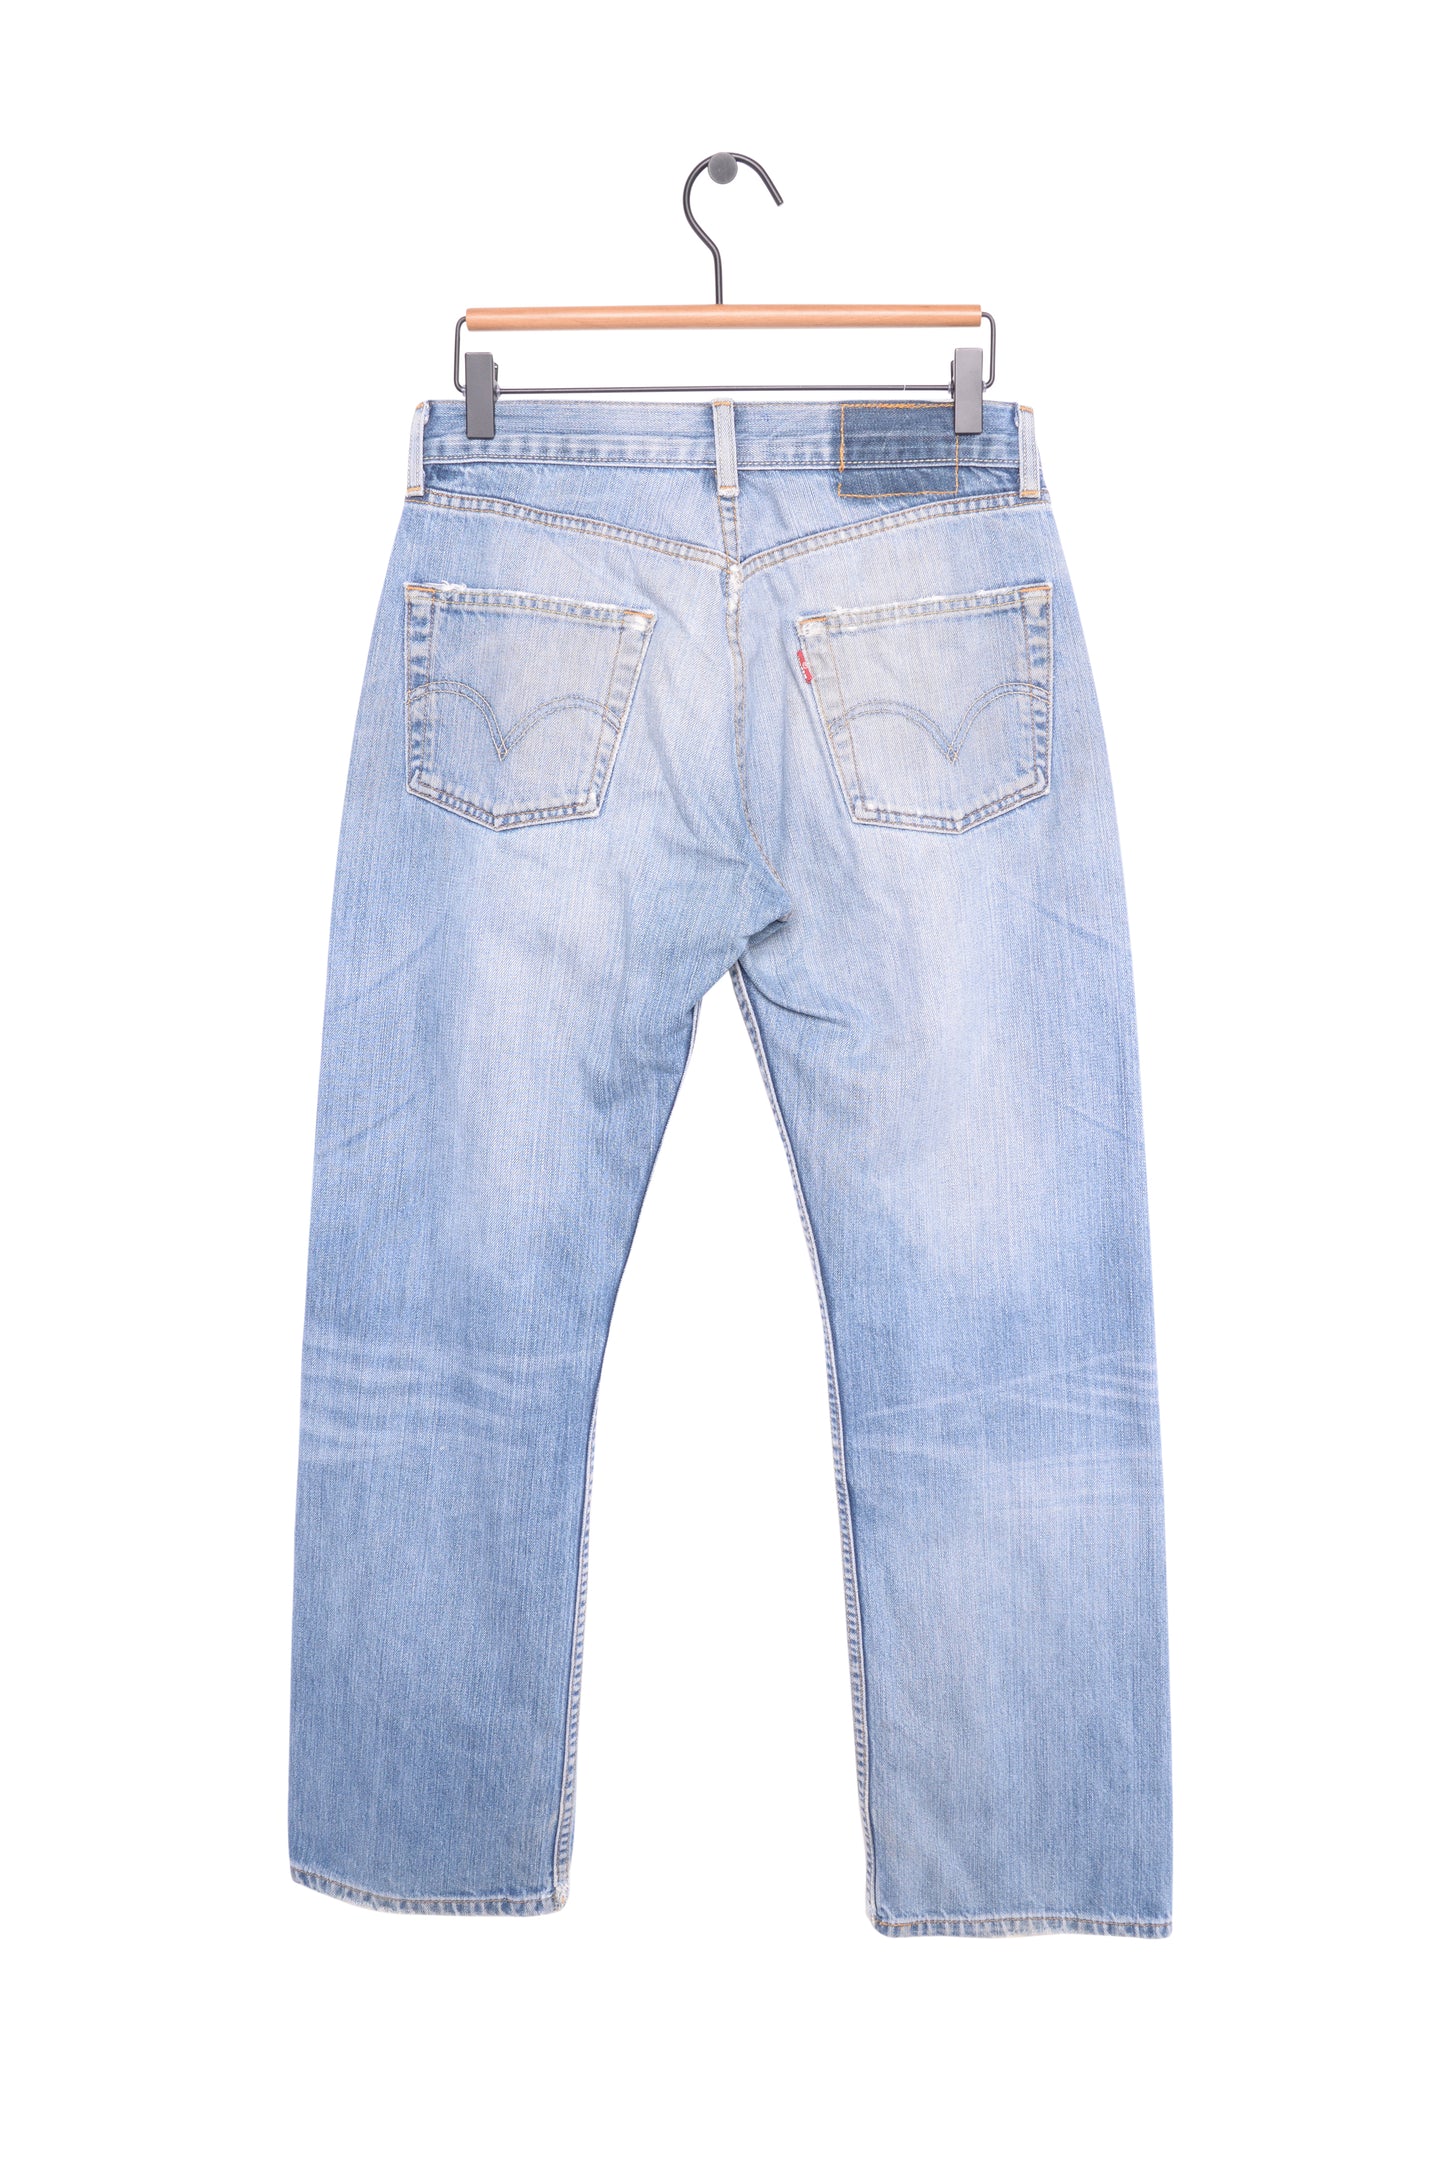 Faded Straight Levi's 501 Jeans 29W x 29L